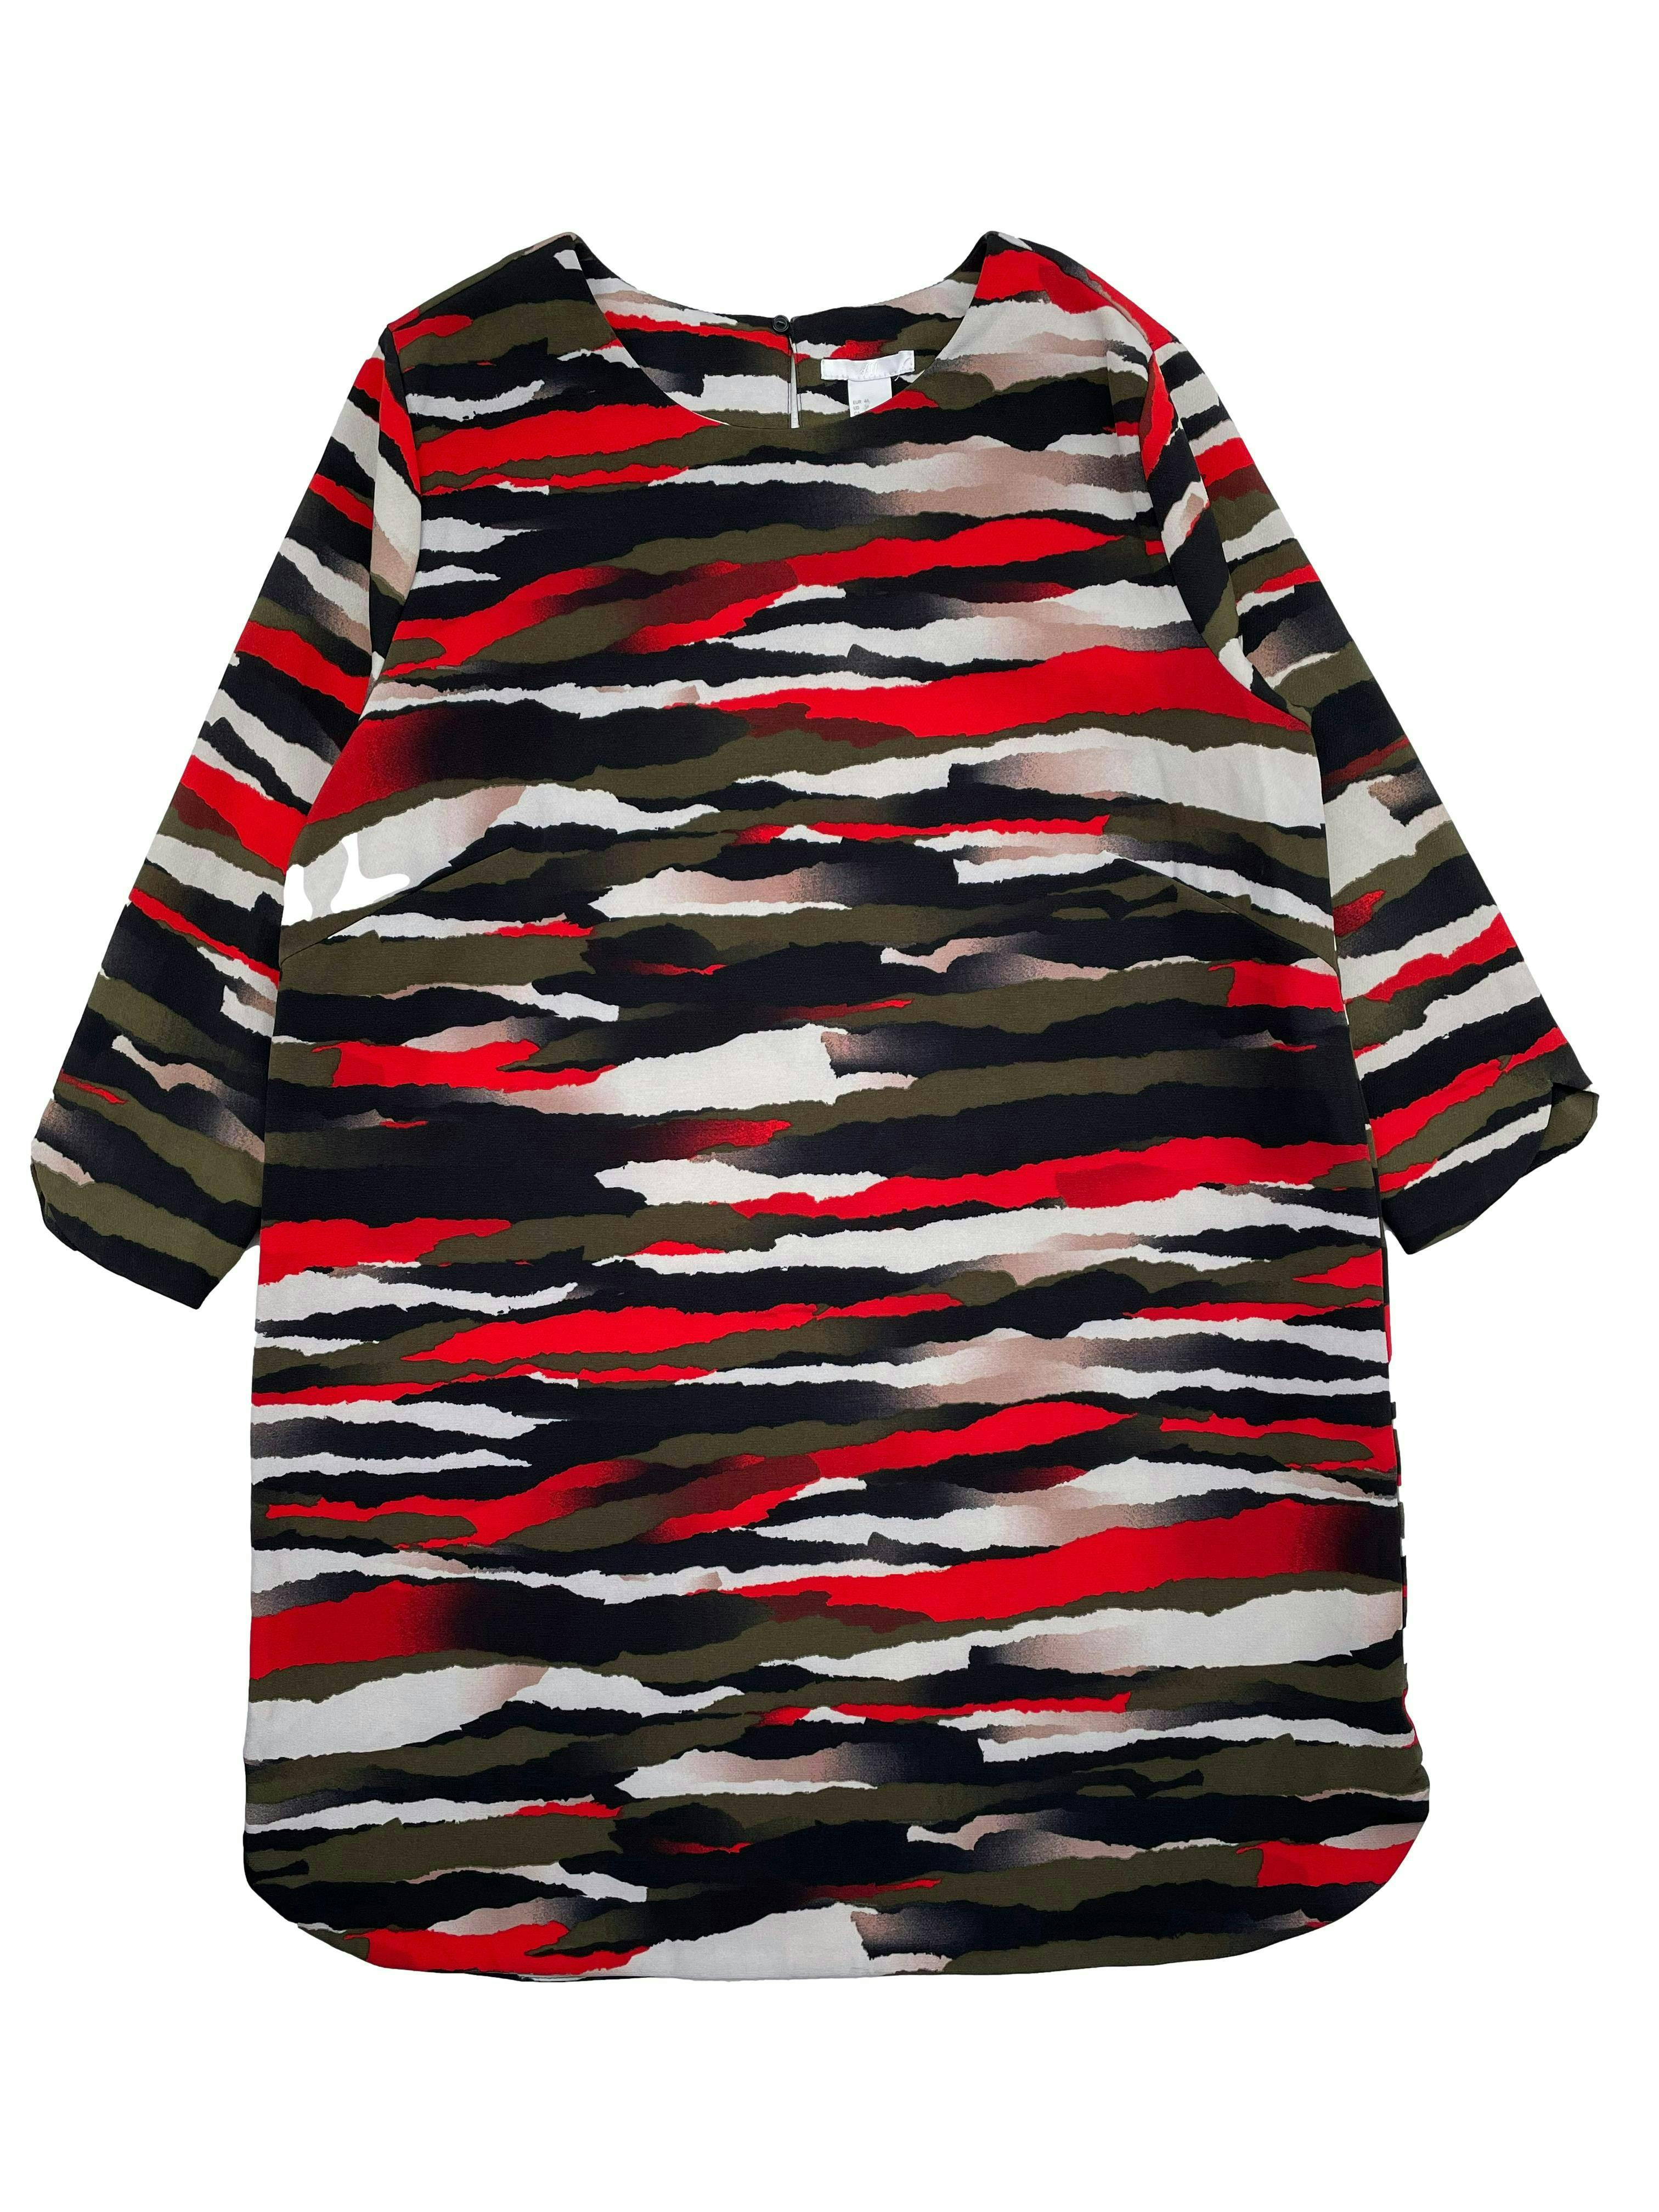 Vestido H&M abstracto en tonos rojos marrones y negros, corte recto, manga 3/4, botón posterior en el cuello. Busto: 108cm, Largo: 88cm. Nuevo con etiqueta